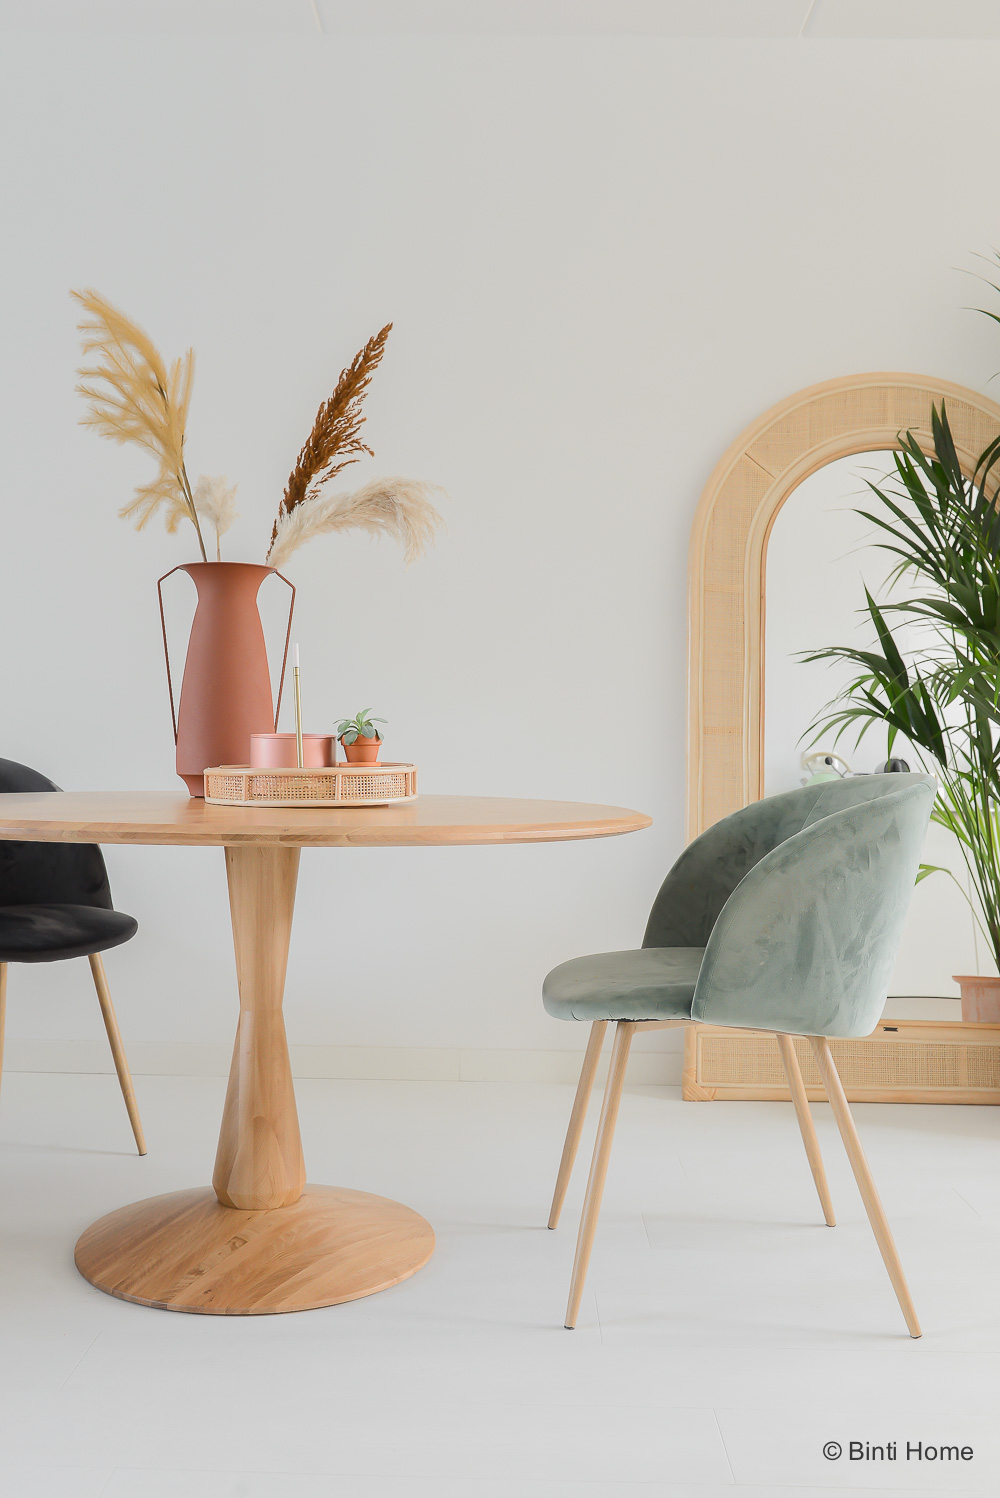 Een prachtige ronde design van eiken - Scandinavisch design - Binti Home | Interieurontwerpstudio & inspiratie blog